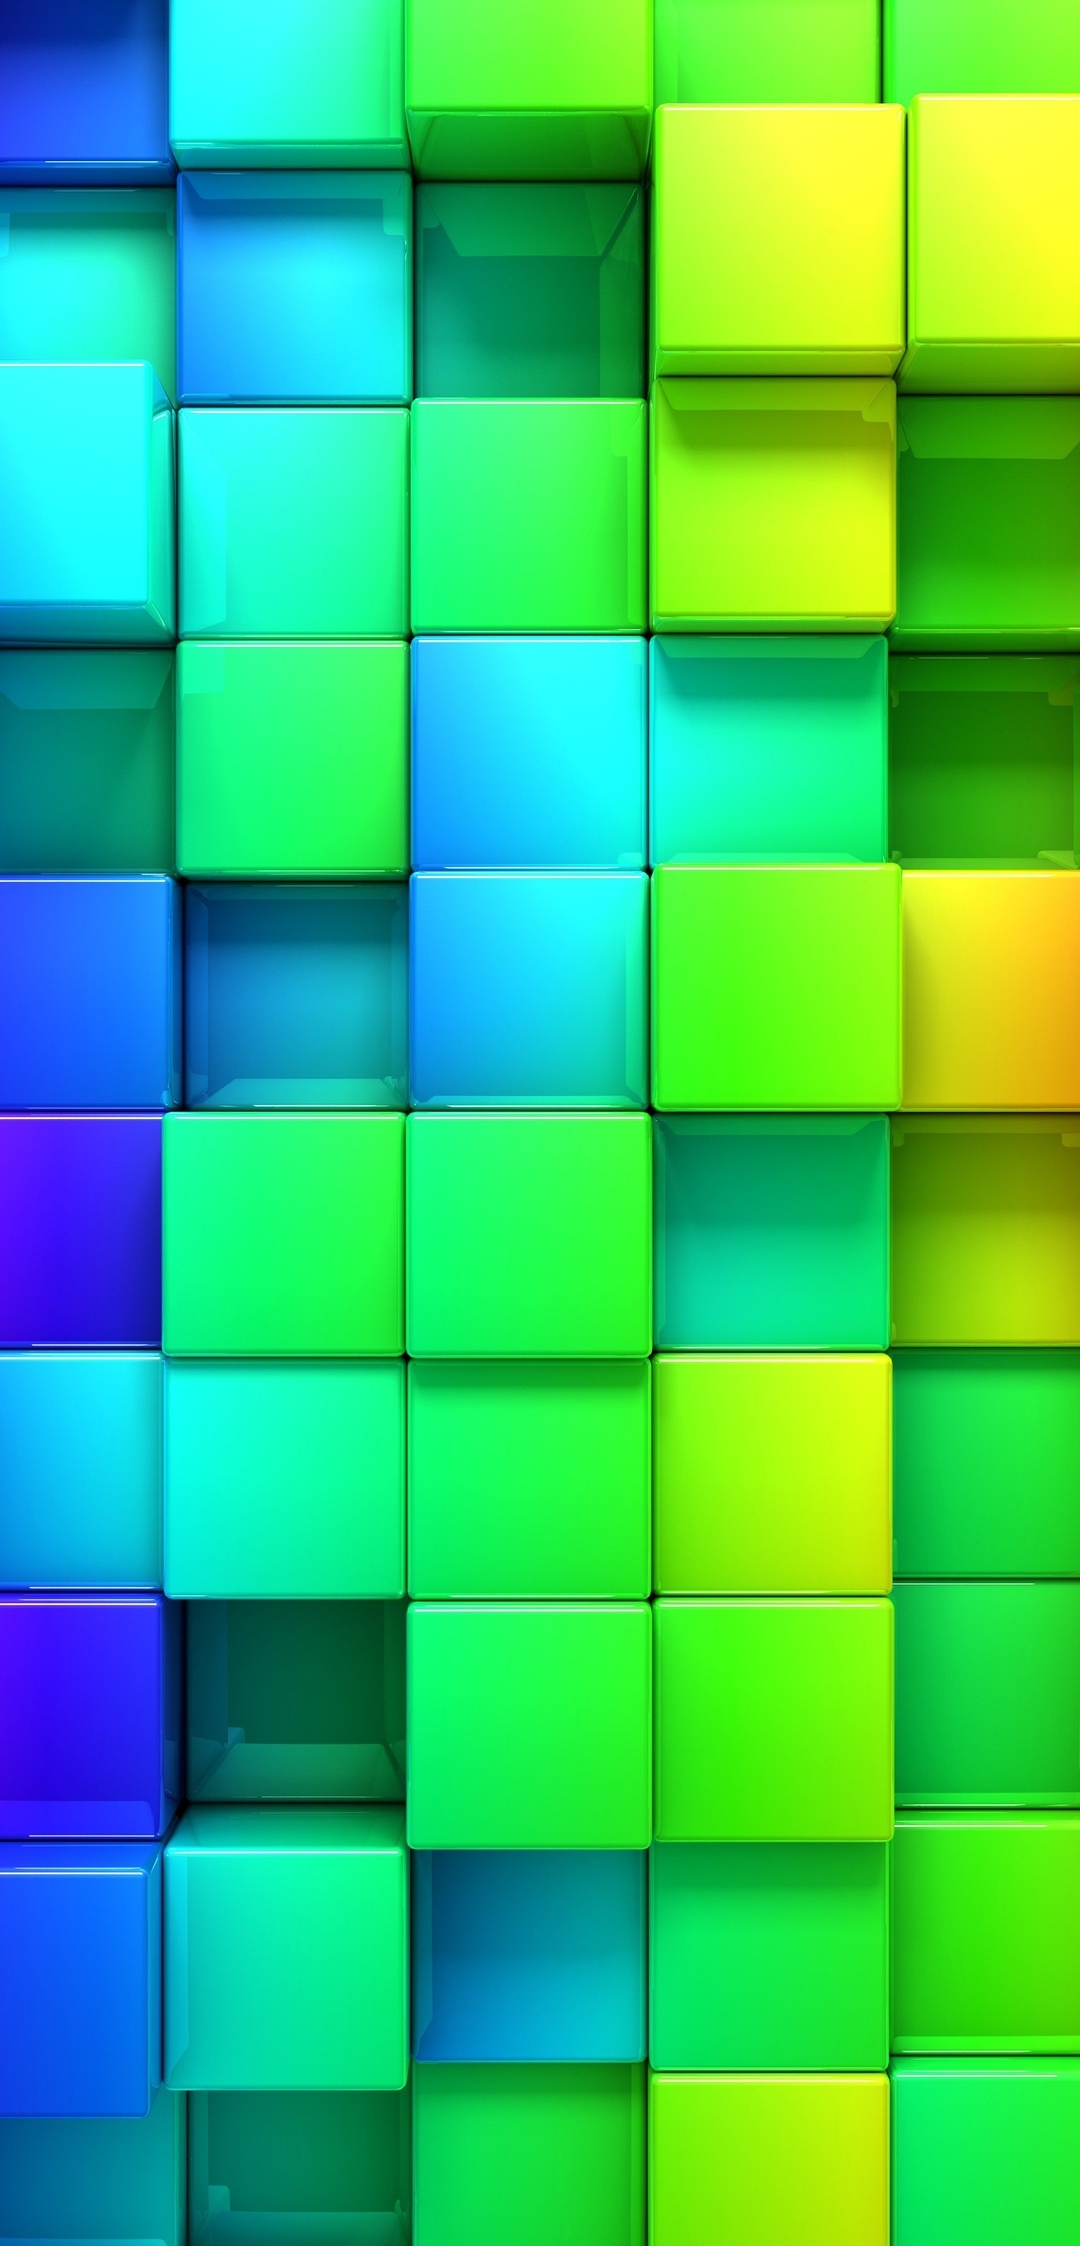 Image: Cubes, squares, 3D, colorful, rainbow